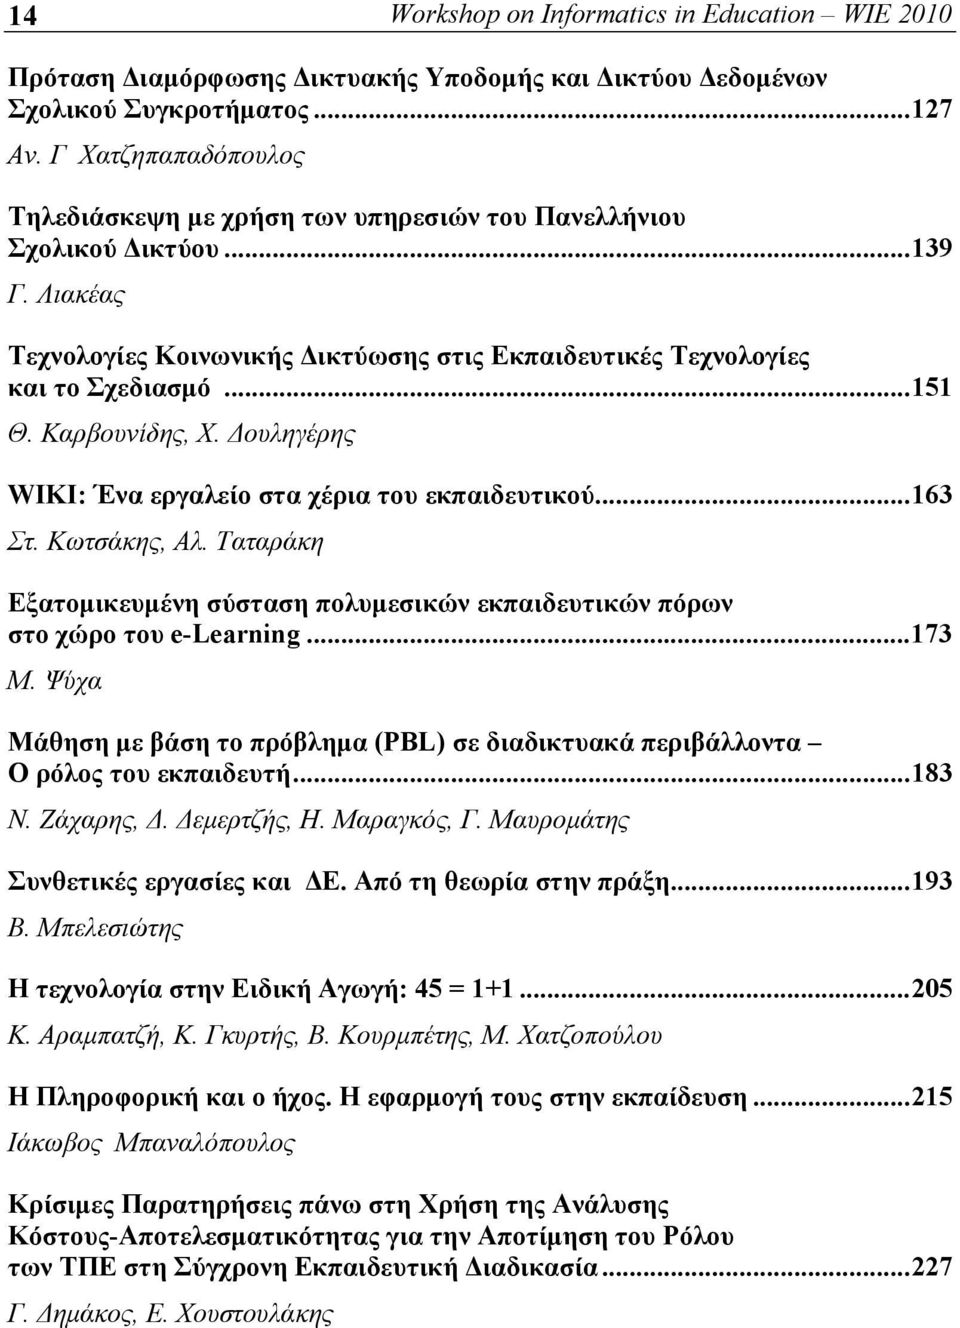 Καρβουνίδης, Χ. Δουληγέρης WIKI: Ένα εργαλείο στα χέρια του εκπαιδευτικού...163 Στ. Κωτσάκης, Αλ. Ταταράκη Εξατομικευμένη σύσταση πολυμεσικών εκπαιδευτικών πόρων στο χώρο του e-learning...173 Μ.